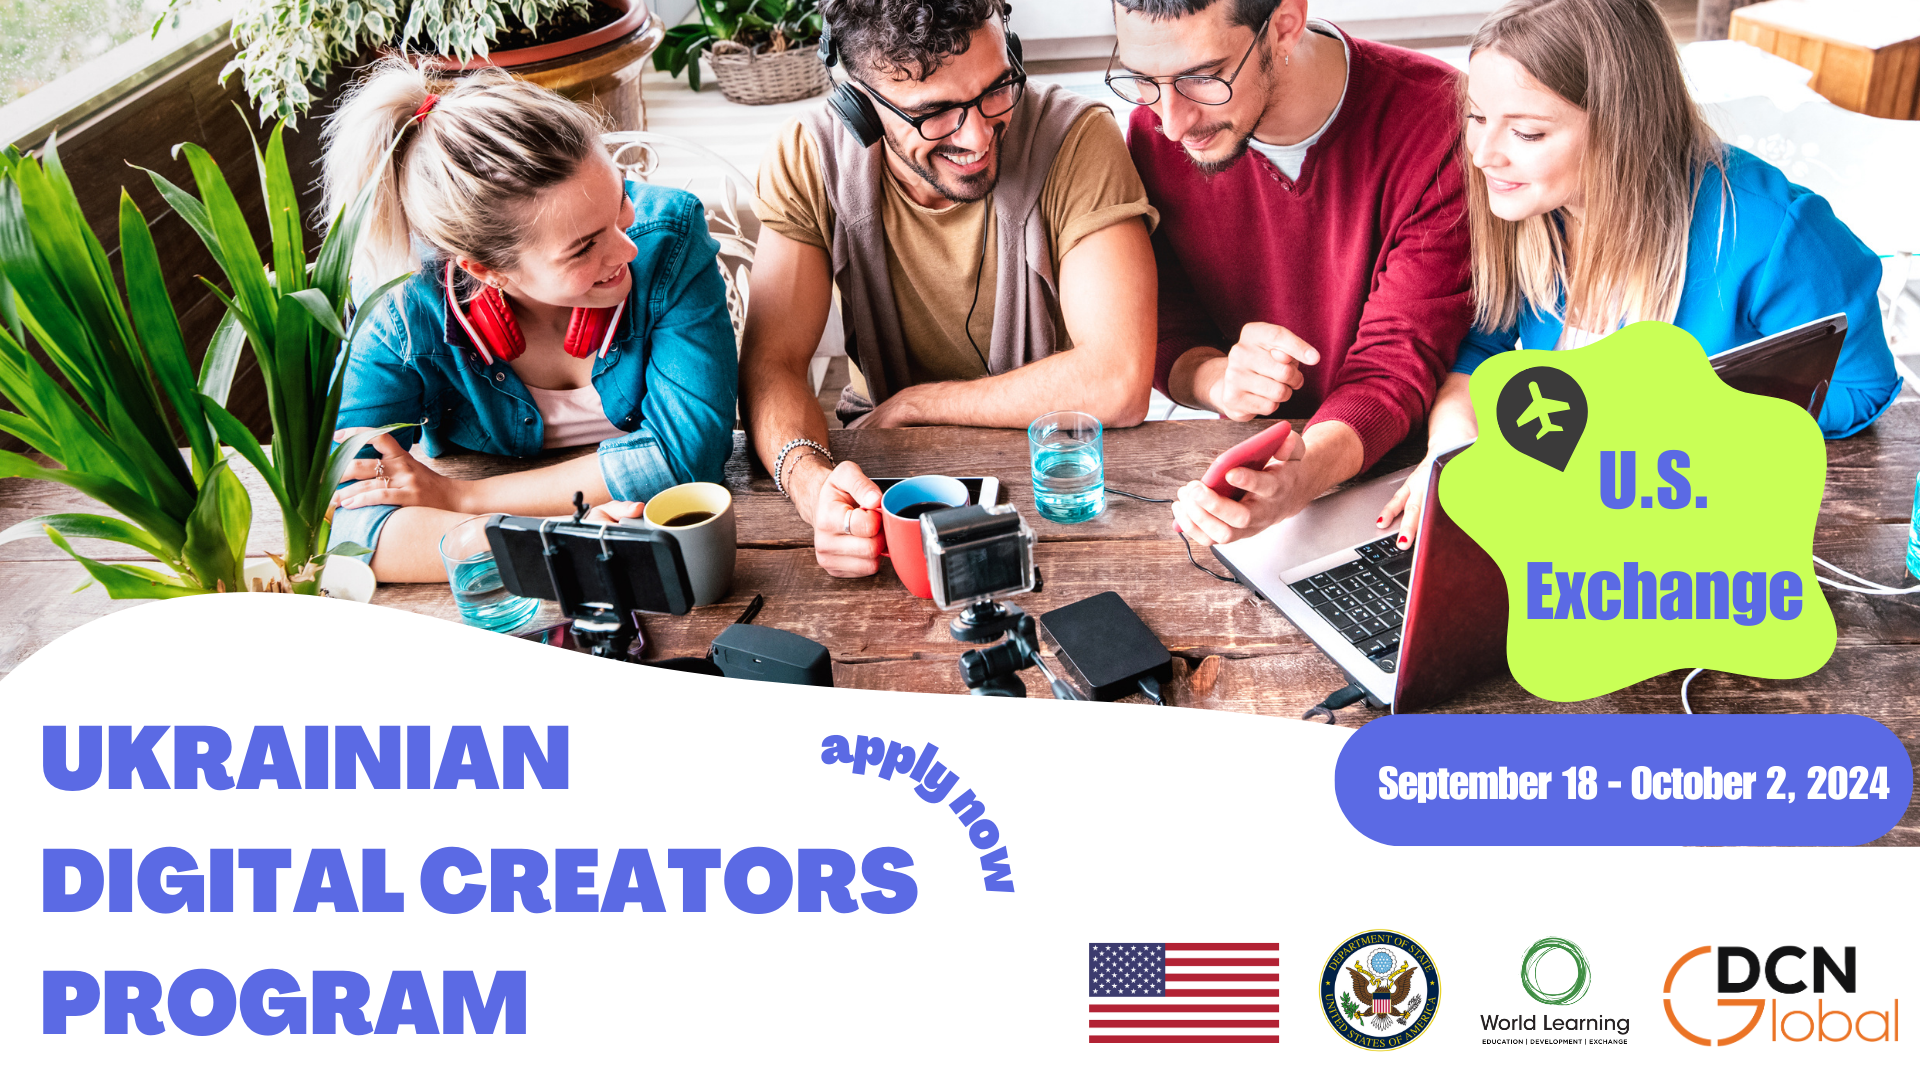 Ukrainian Digital Creators | U.S. Exchange Program